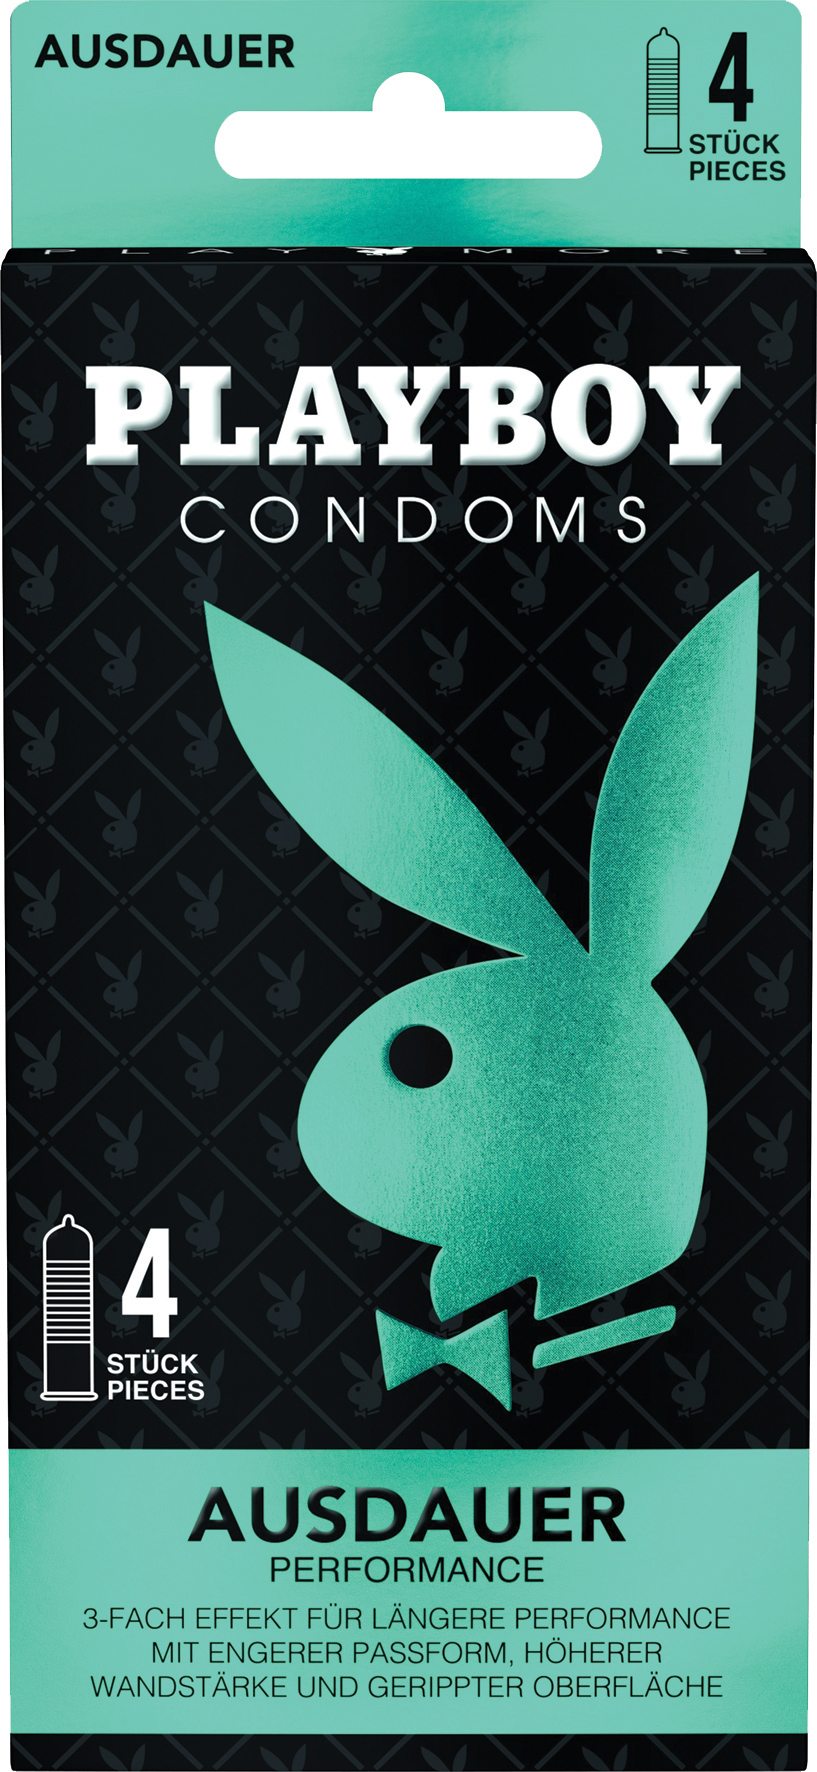 PLAYBOY Condoms Ausdauer, triipudega kondoomid, 4tk